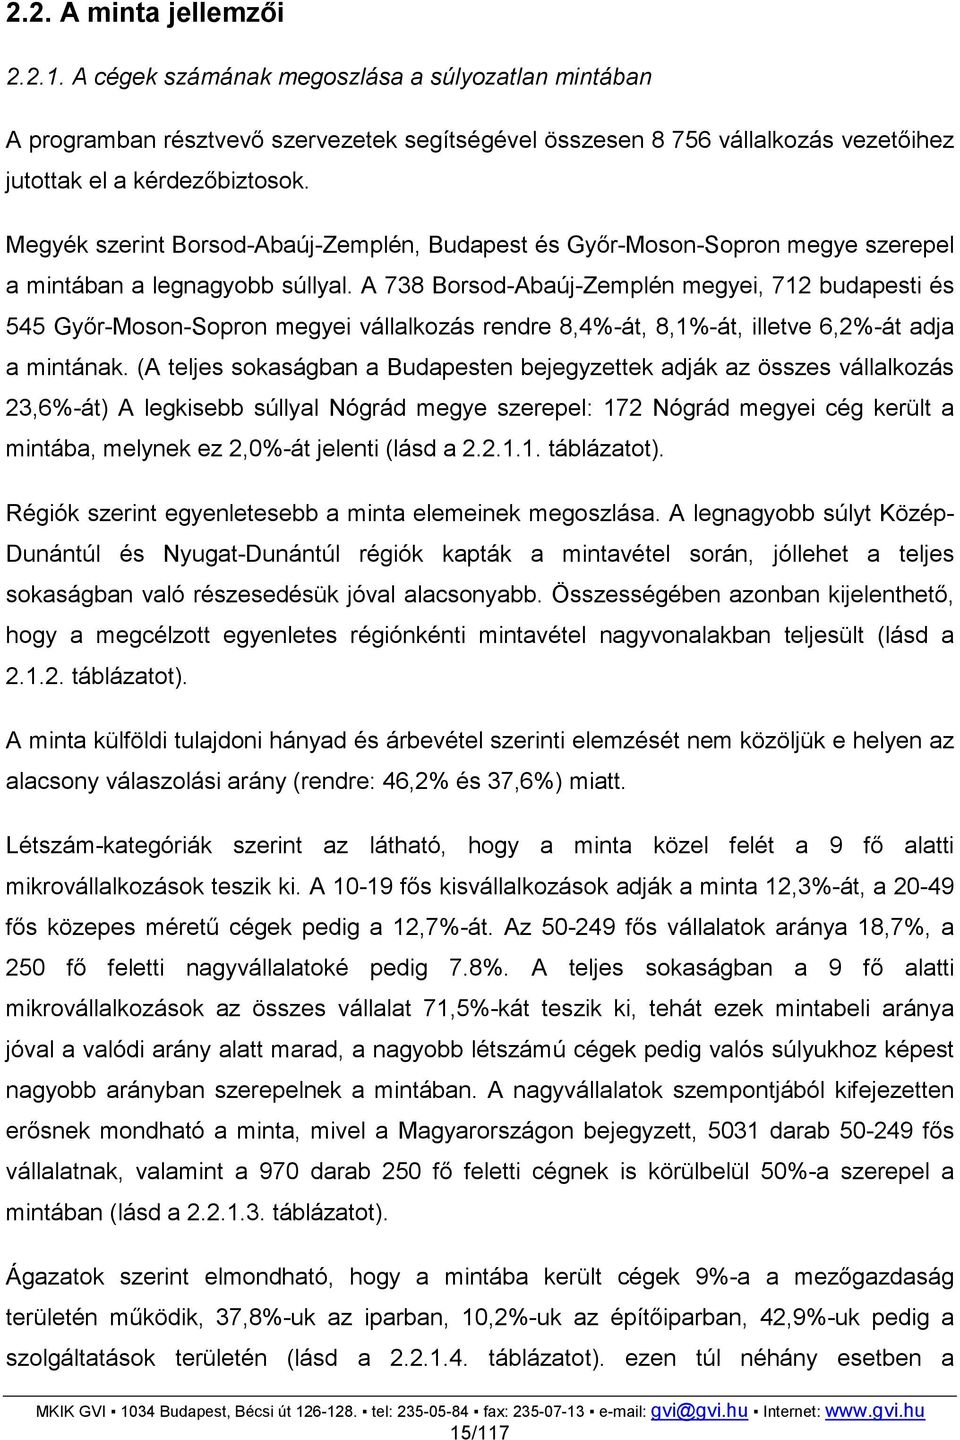 A 738 Borsod-Abaúj-Zemplén megyei, 712 budapesti és 545 Gyır-Moson-Sopron megyei vállalkozás rendre 8,4%-át, 8,1%-át, illetve 6,2%-át adja a mintának.